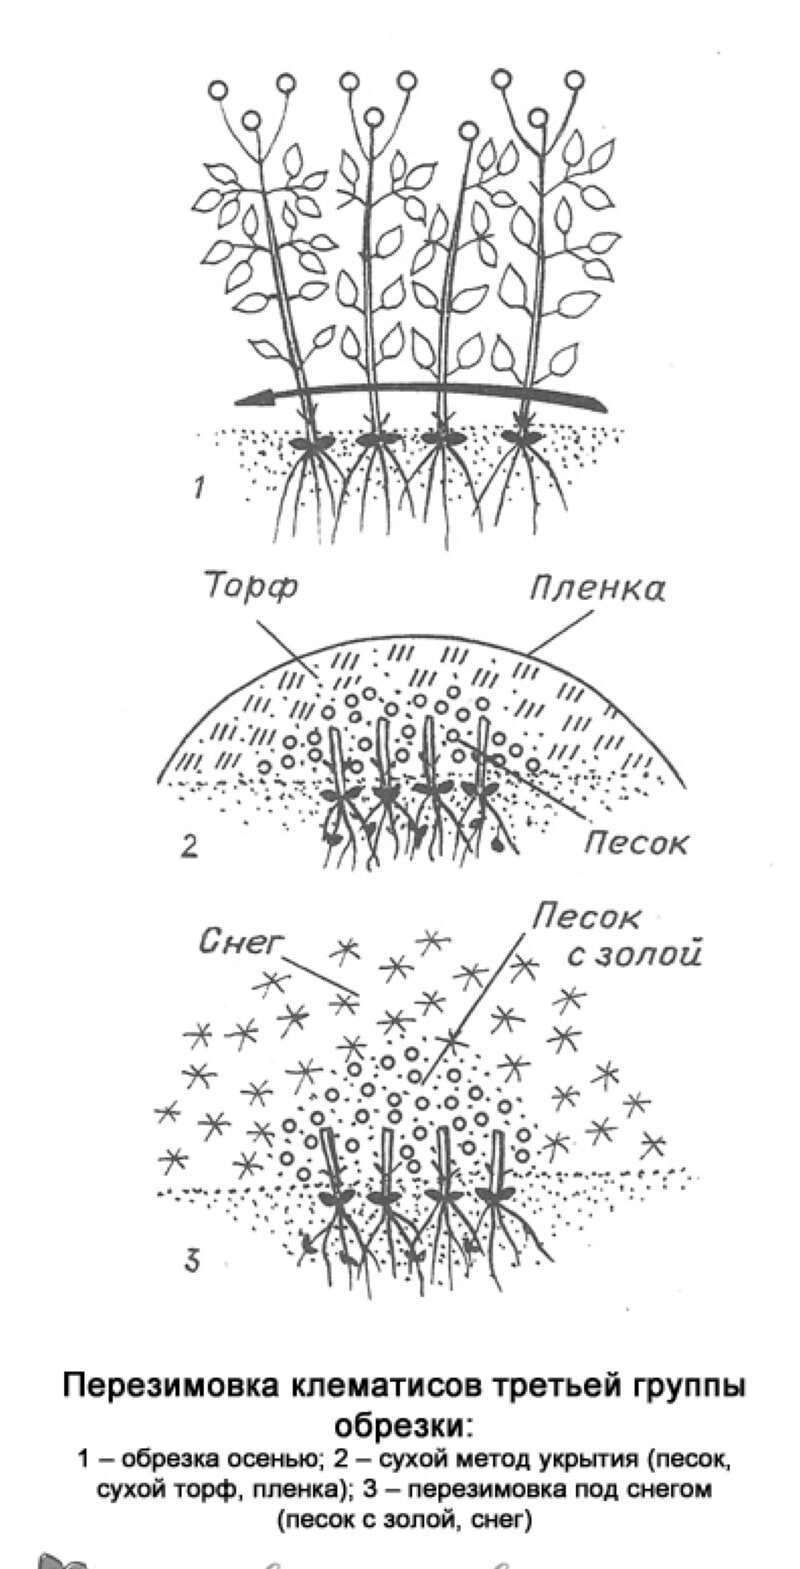 Клематис тайга (clematis taiga): описание и фото гибридного сорта + особенности посадки, размножения, ухода и обрезки